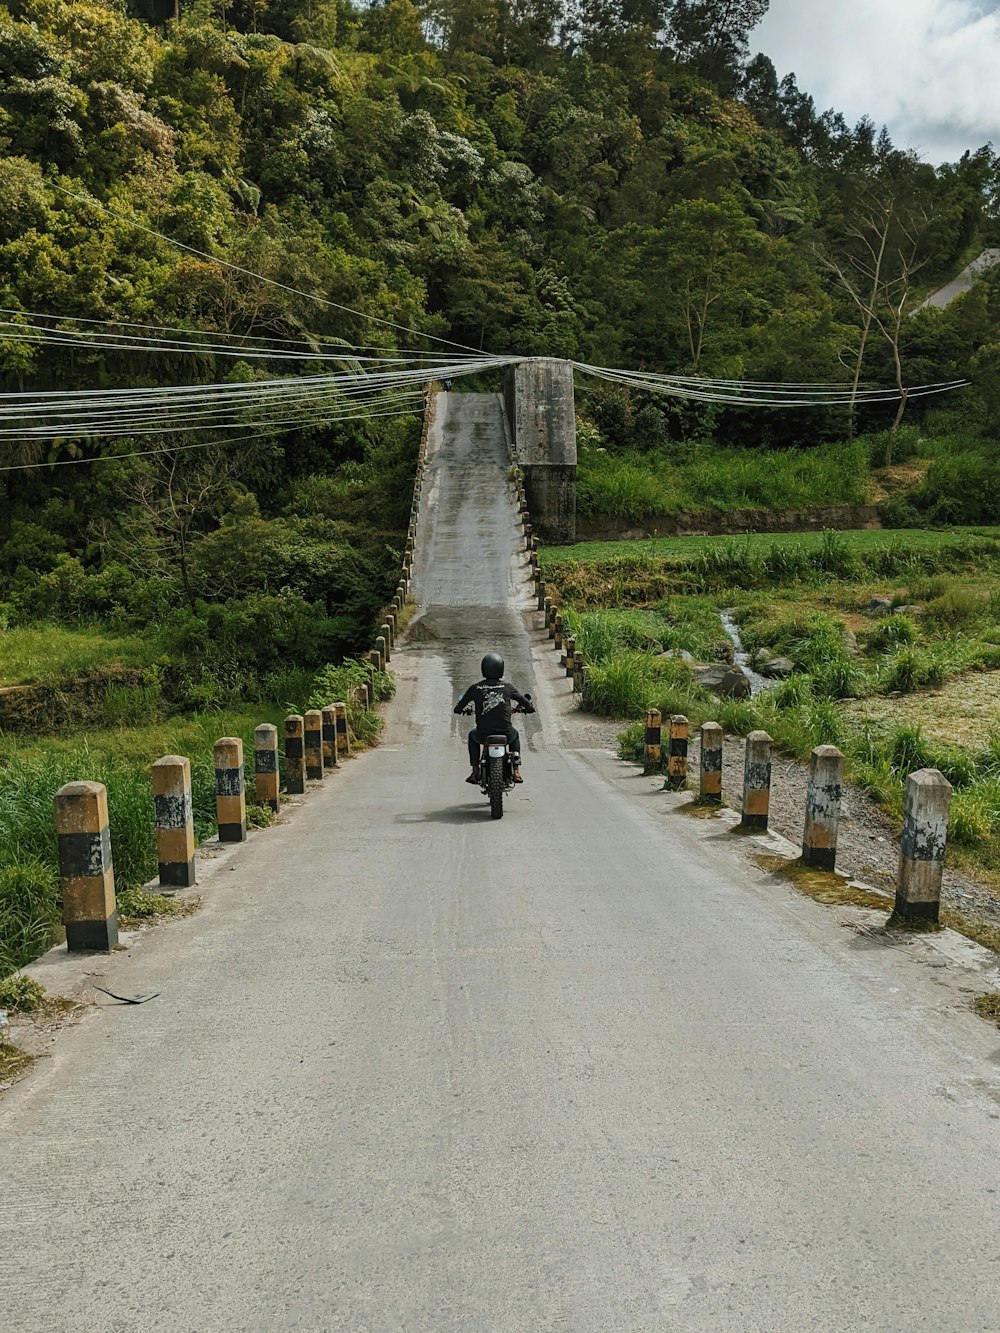 une personne conduisant une motocyclette sur une route